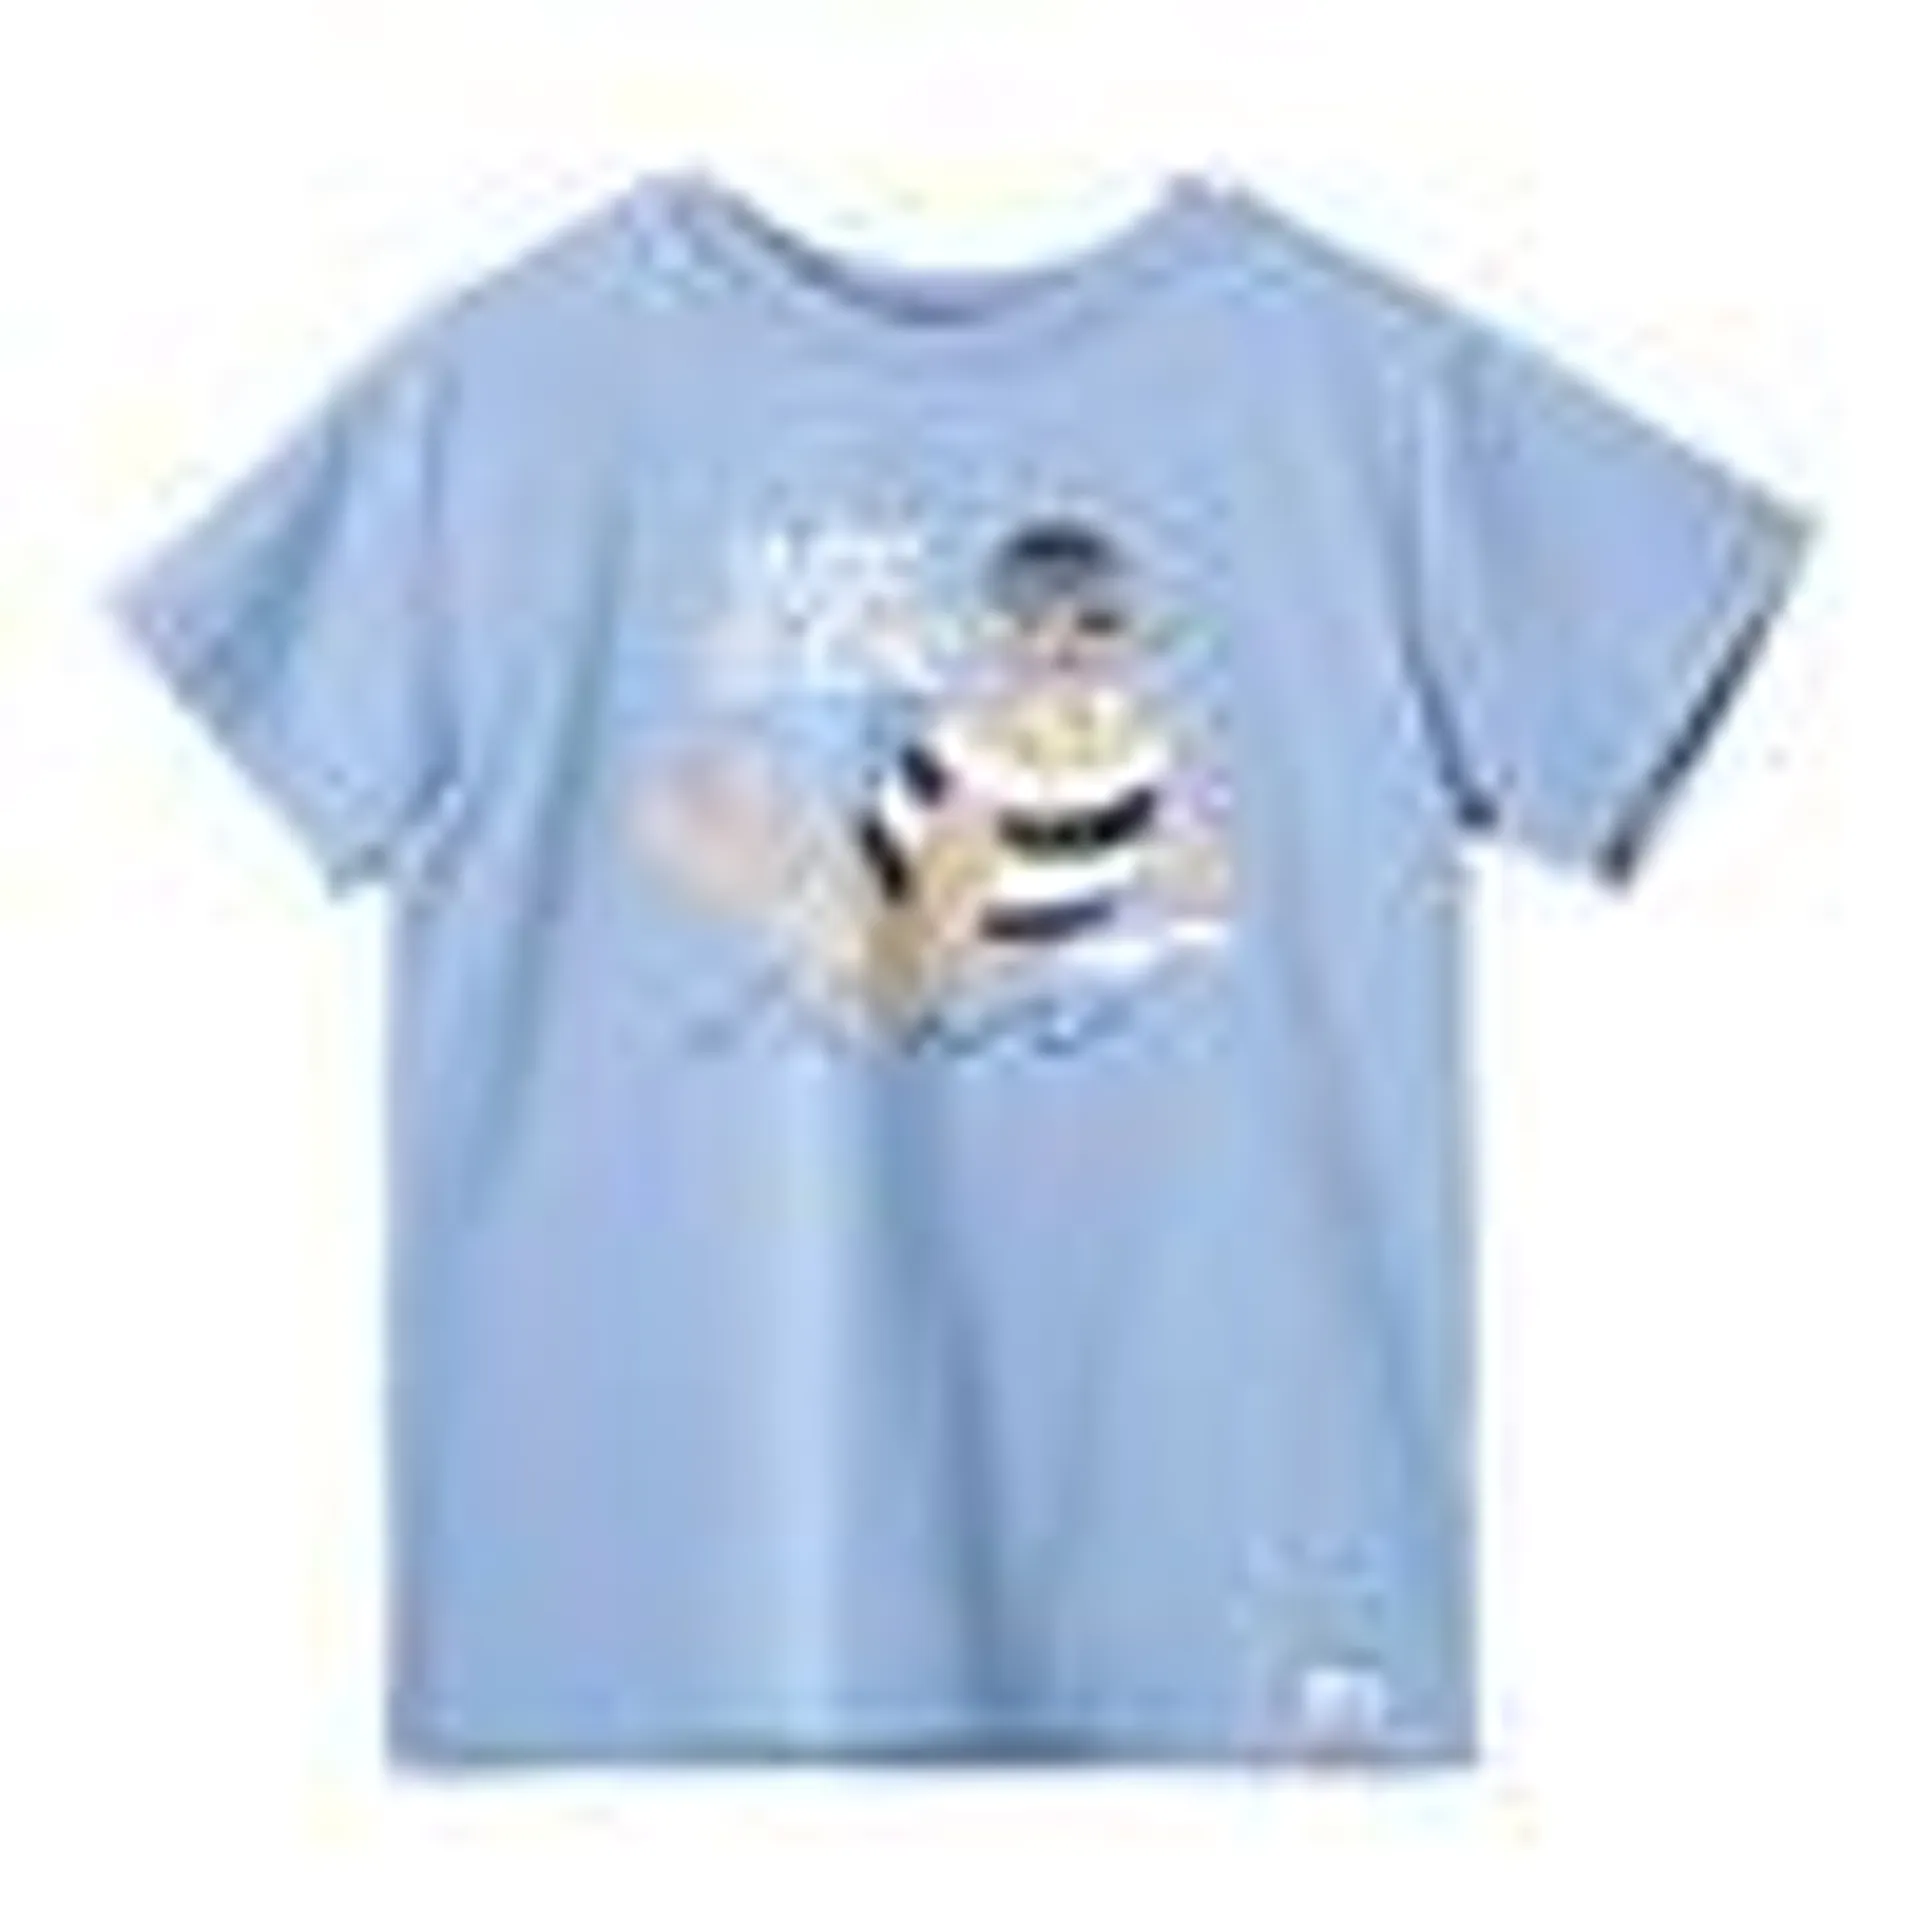 Camiseta manga corta Juan azul claro para bebé niño